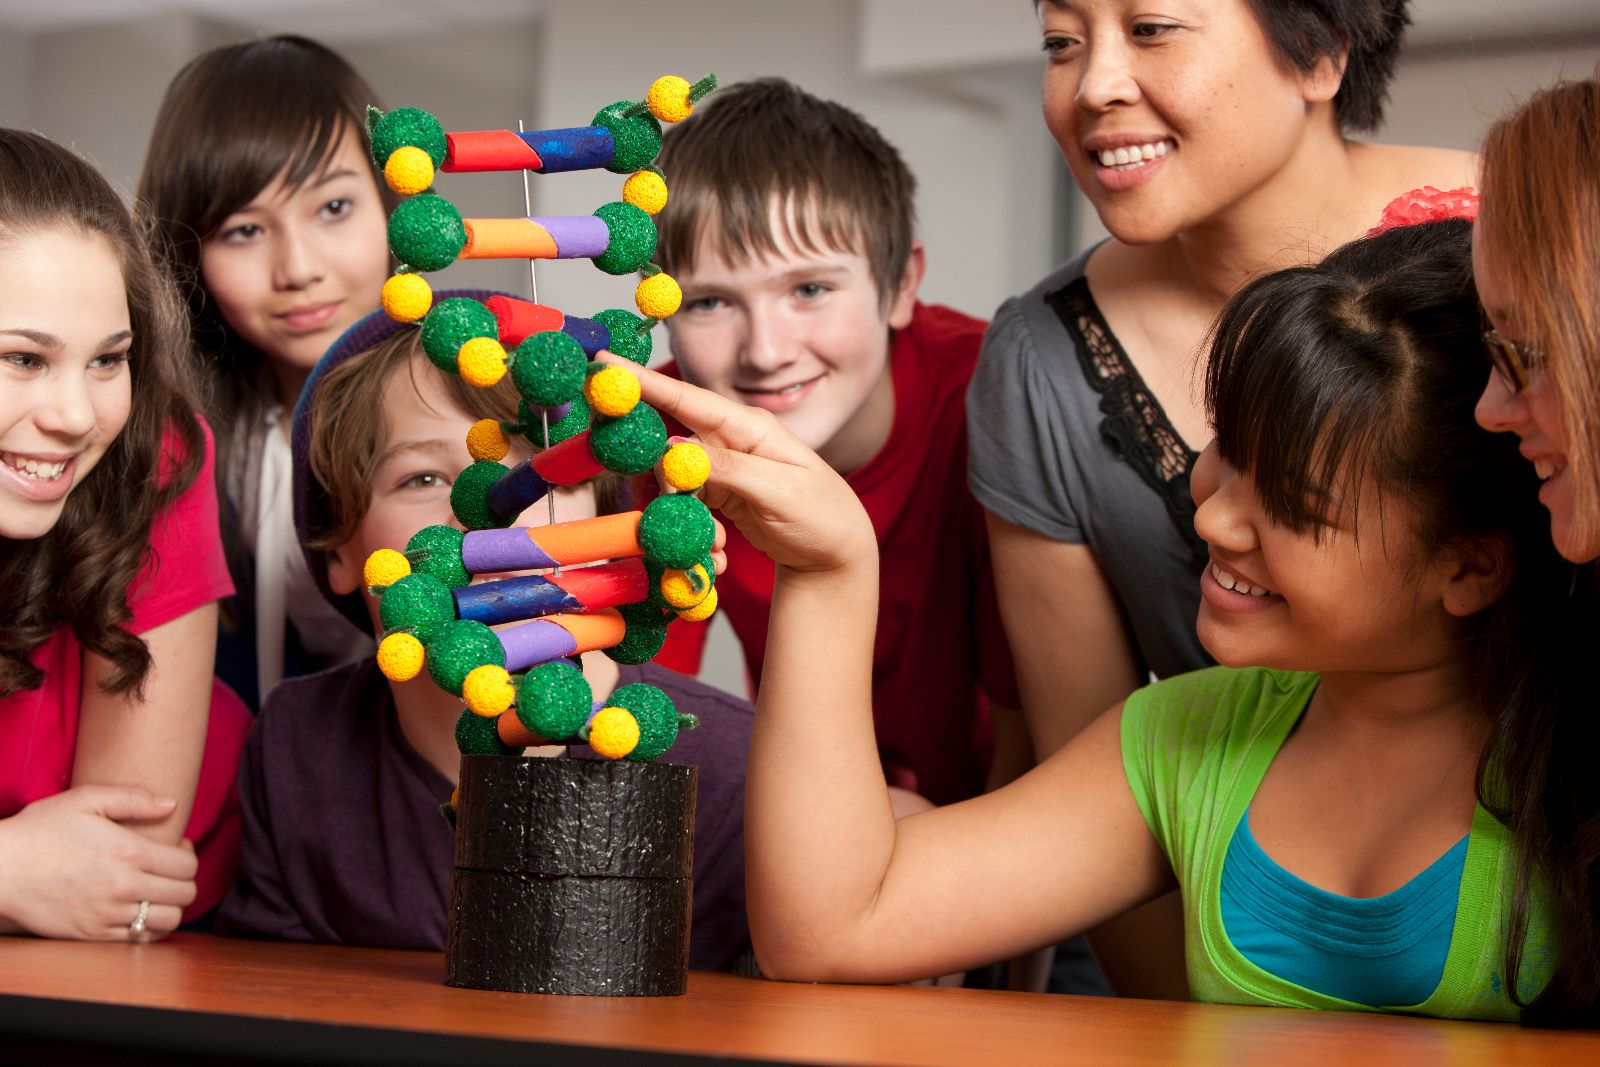 niñas y niños jugando con un modelo a escala de ADN